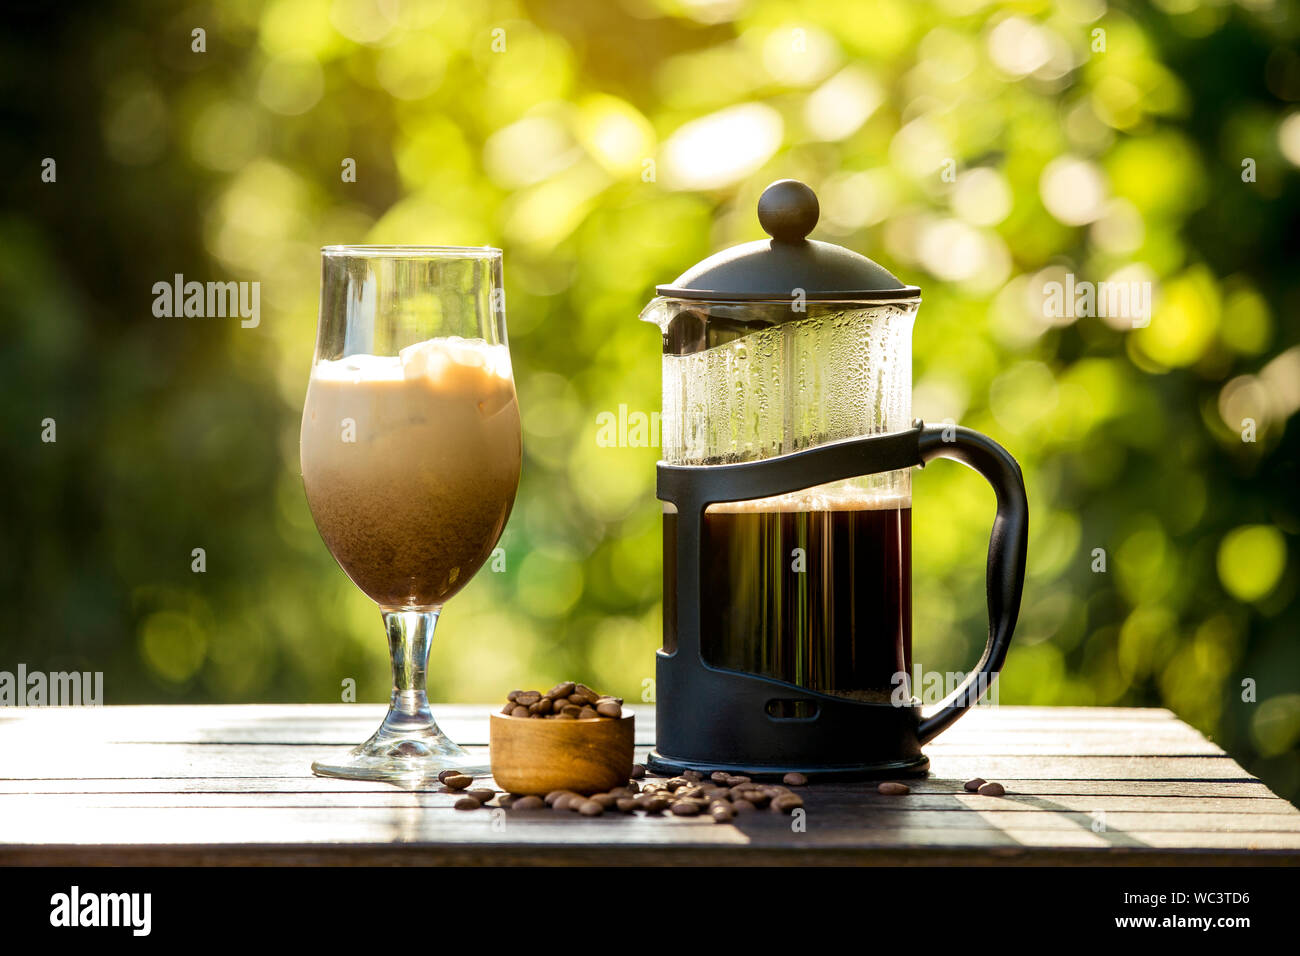 Selektiver Fokus auf Französische Presse Kaffeekanne und hausgemachte Eiskaffee, faulen Sonntag Morgen oder Abend mit kühlen Eiskaffee im Haus Garten, brechen. Werden Stockfoto